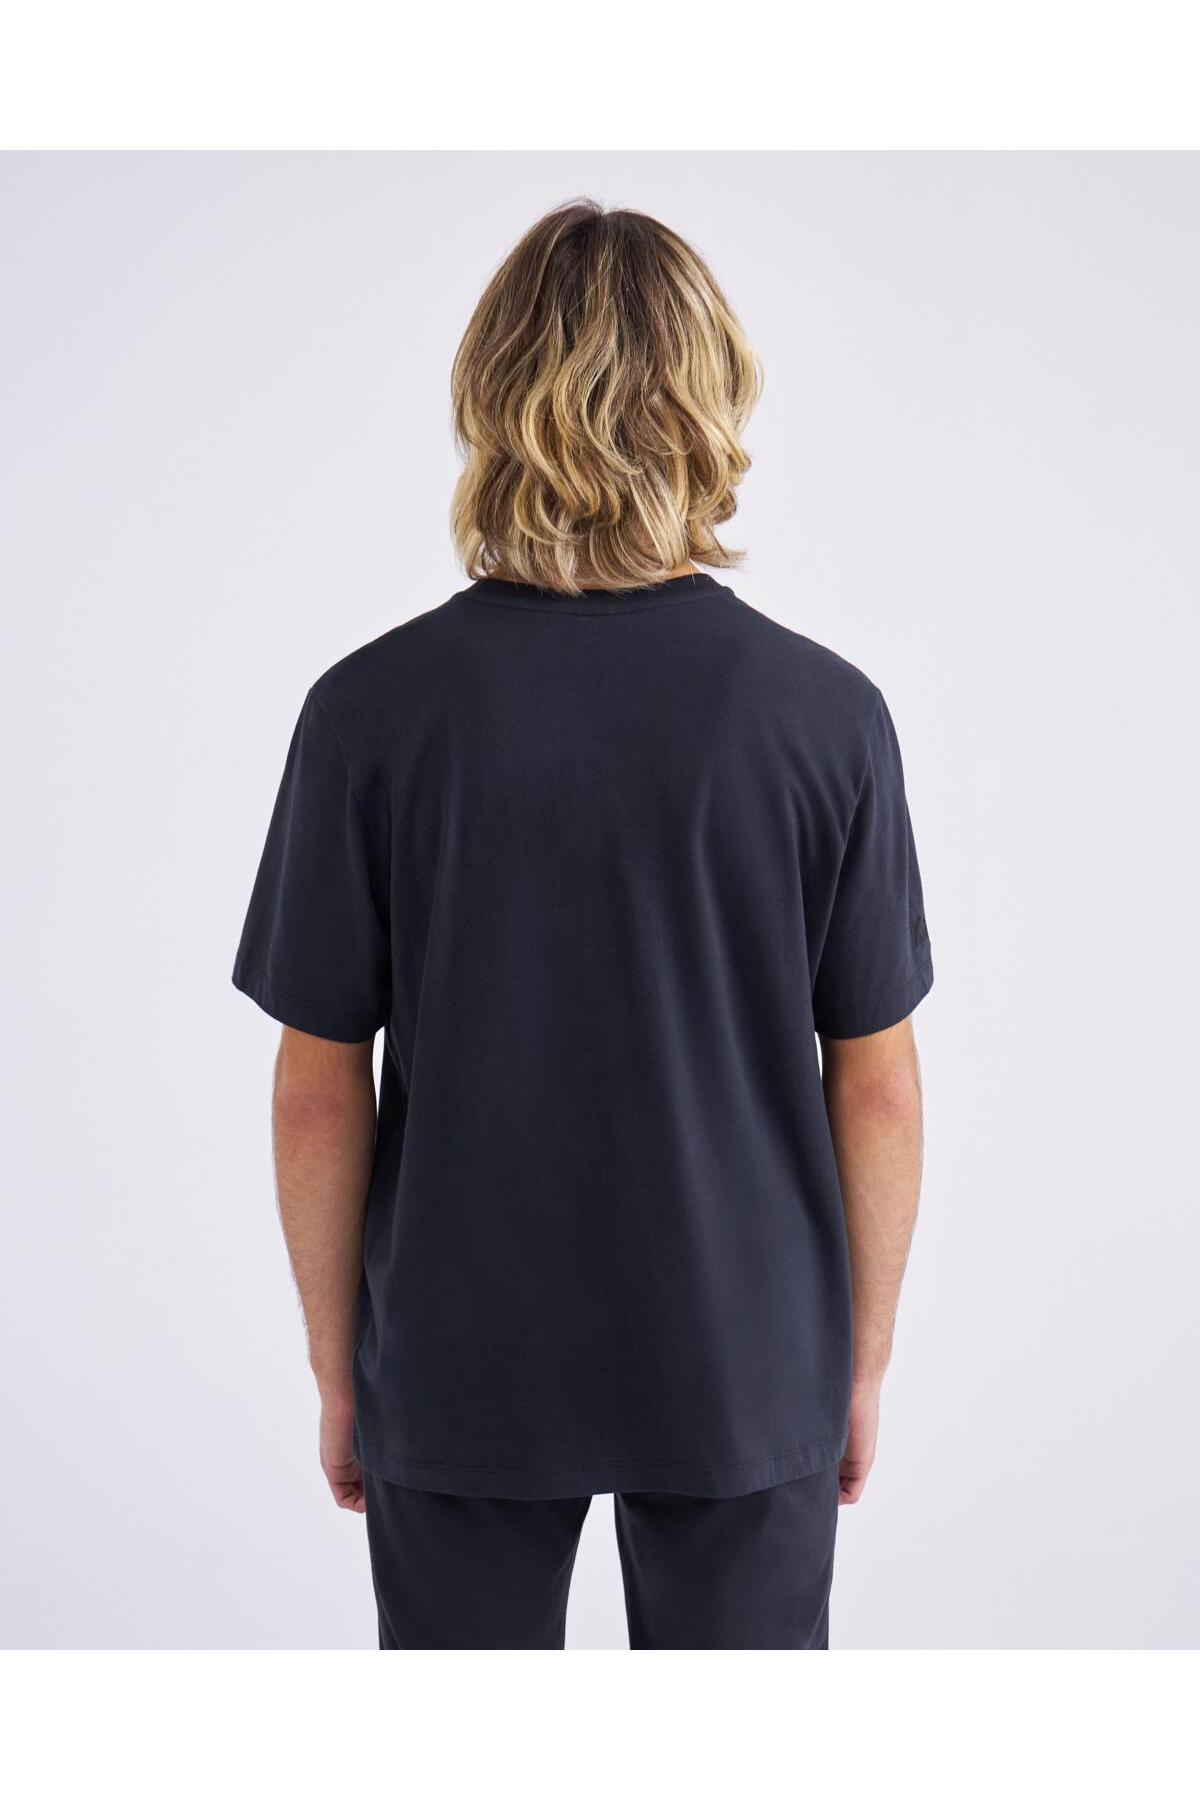 Kappa تی شرت معمولی مشکی مردانه تاهیتیکس